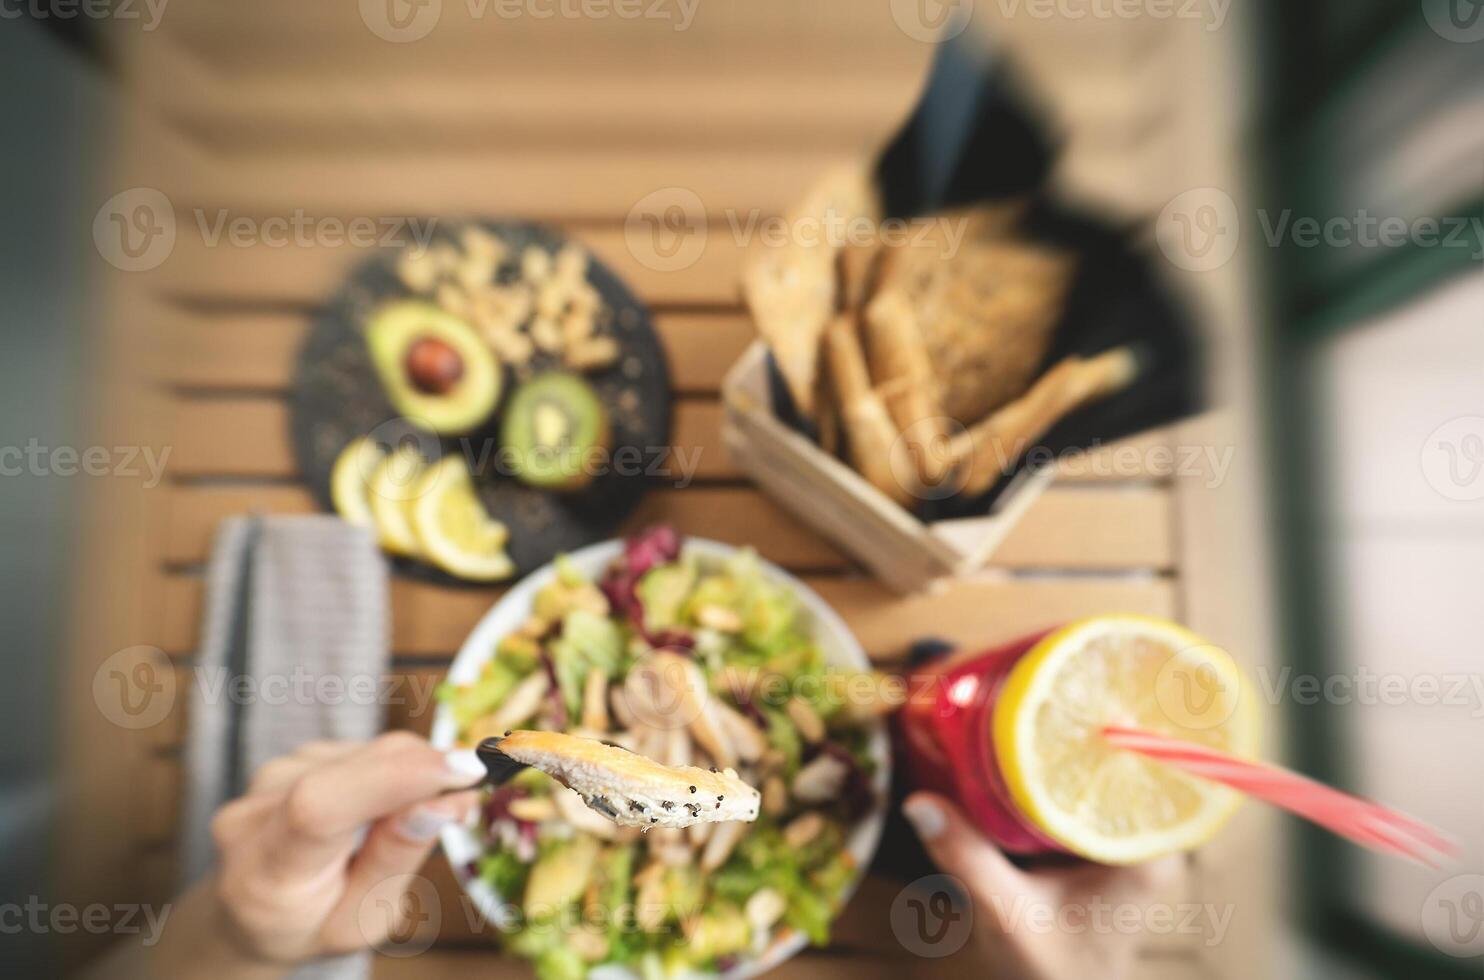 parte superior ver hembra manos comiendo salud vegetal ensalada con pollo pecho aguacate y kiwi Bebiendo Fresco zalamero Fruta - sano nutrición comida estilo de vida personas concepto foto